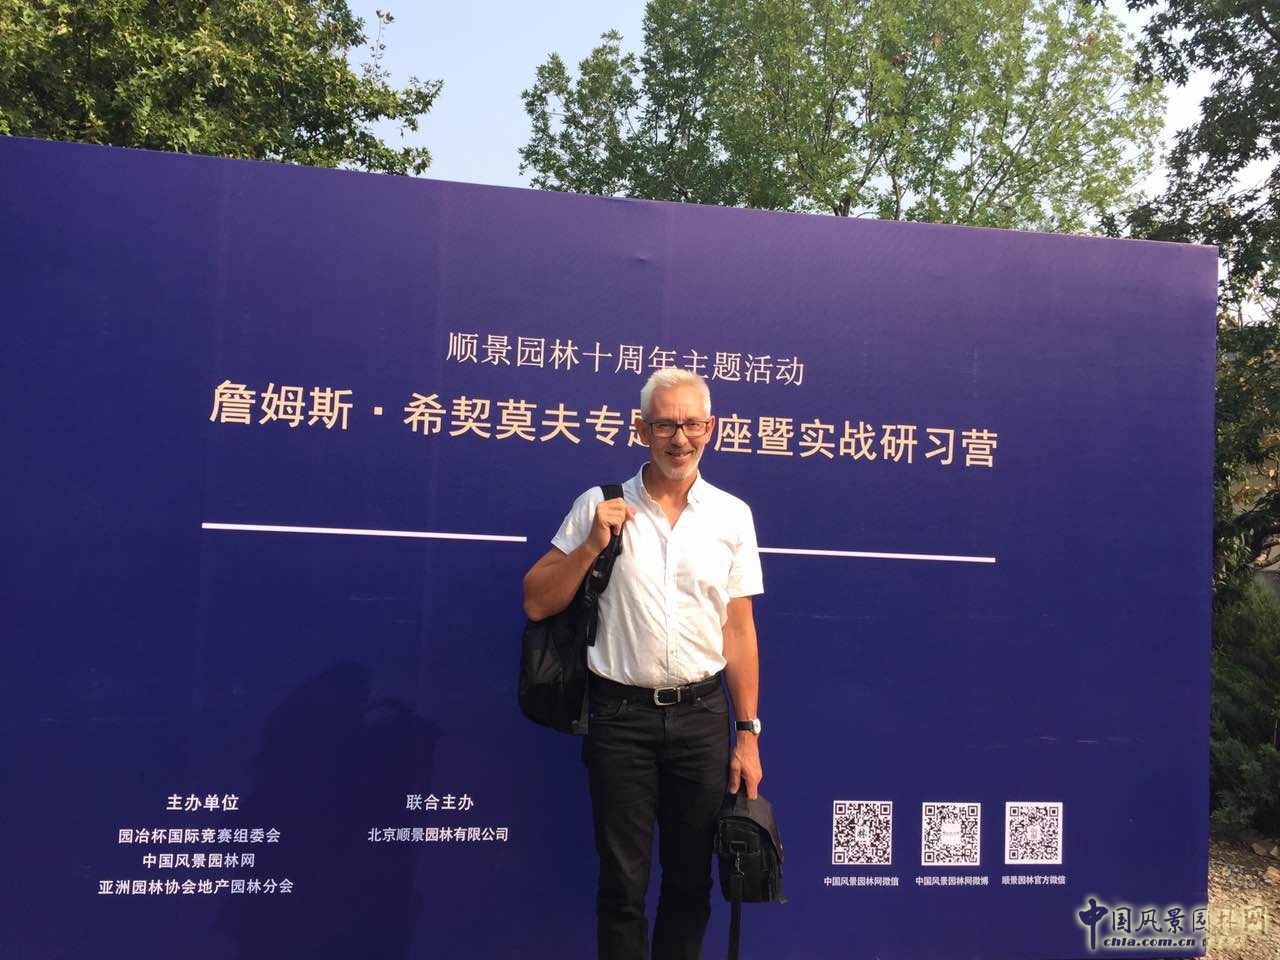 国际景观师詹姆斯.希契莫夫专题讲座在北京举办